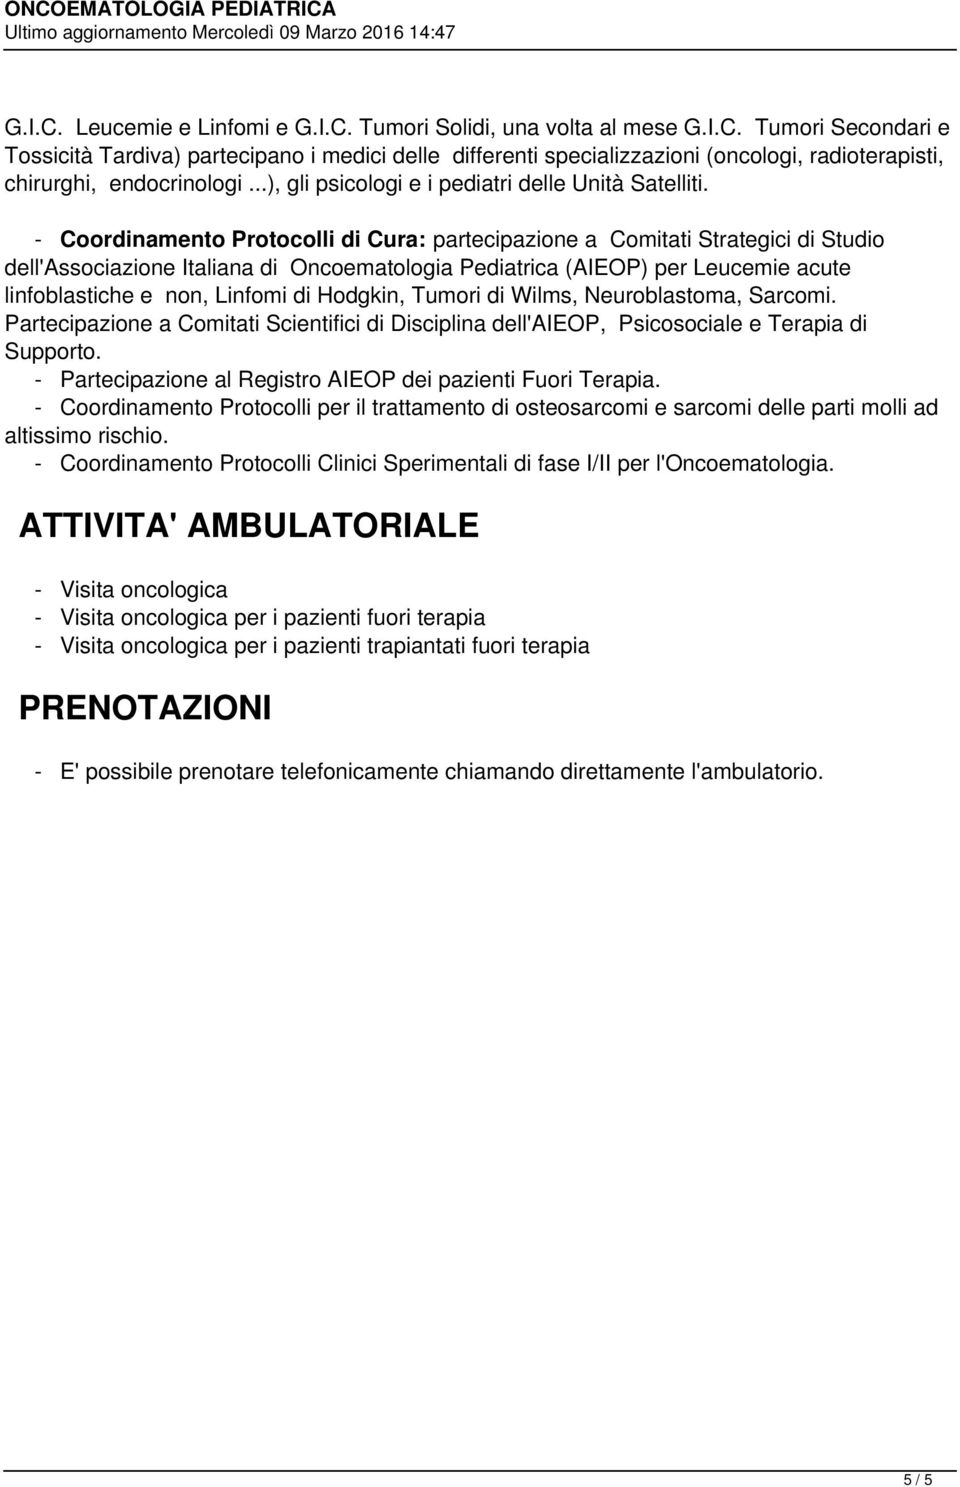 - Coordinamento Protocolli di Cura: partecipazione a Comitati Strategici di Studio dell'associazione Italiana di Oncoematologia Pediatrica (AIEOP) per Leucemie acute linfoblastiche e non, Linfomi di